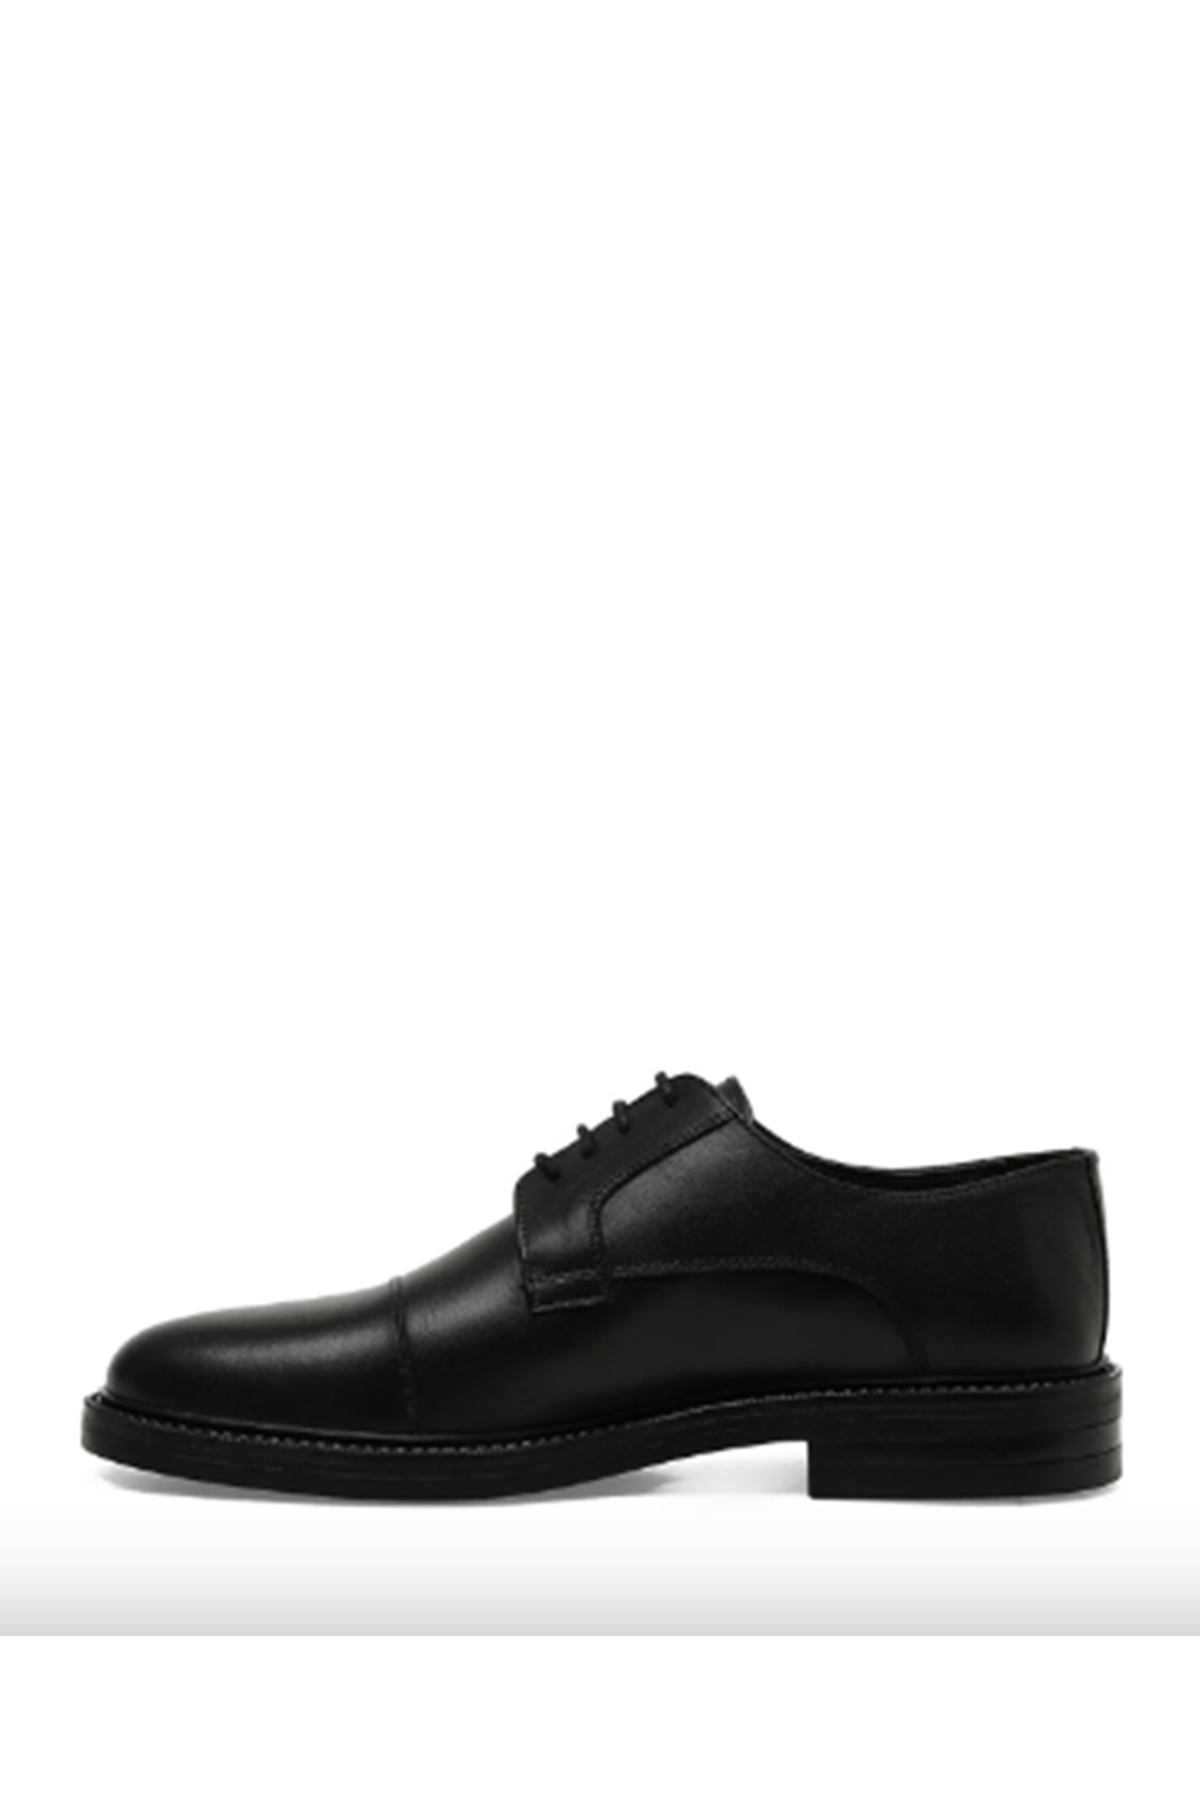 Boy Uzatan Ayakkabı Gizli Topuklu Hakiki Deri JOEY 3PR Siyah Erkek Klasik Ayakkabı MYY248